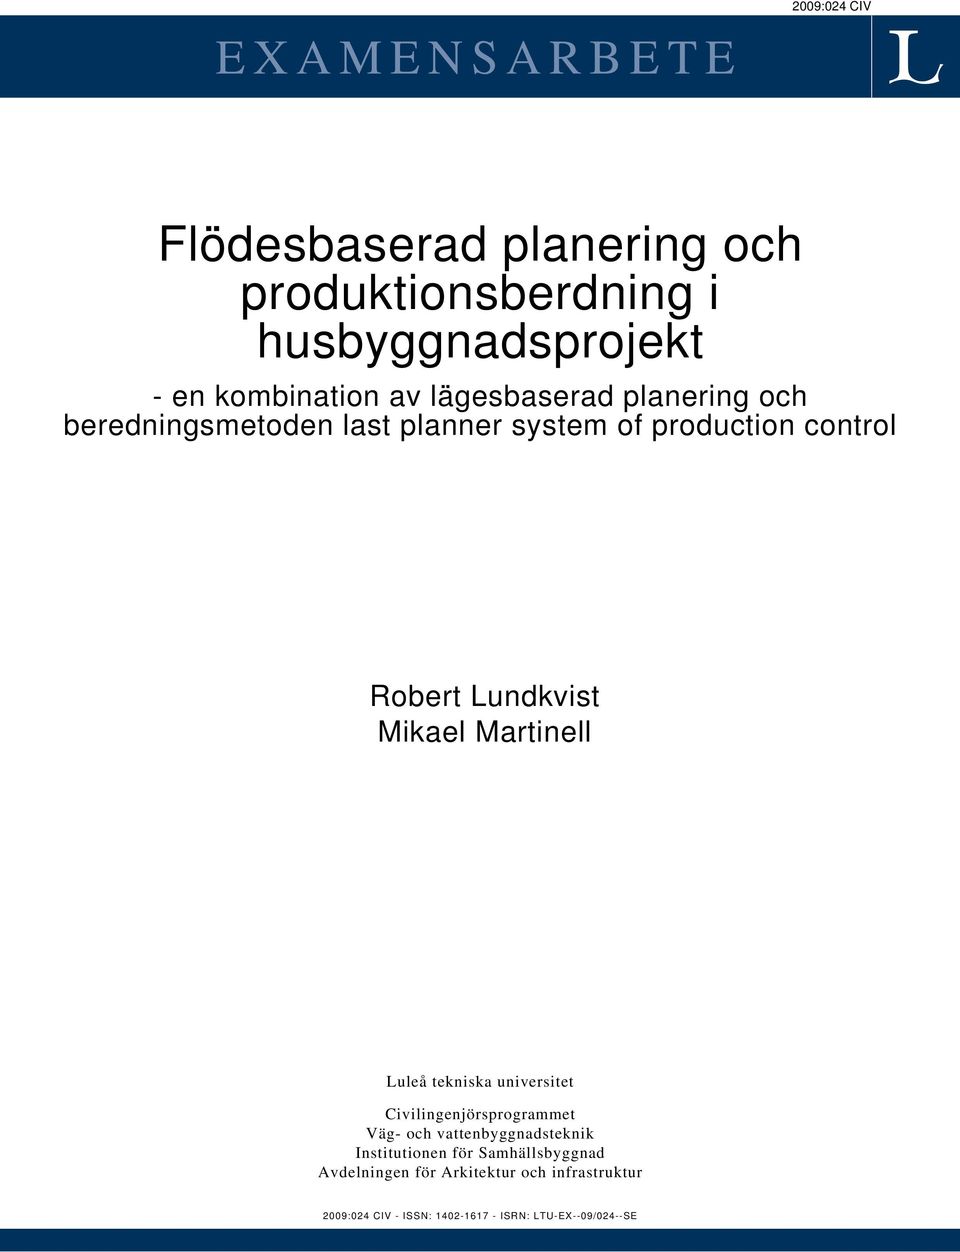 Martinell Luleå tekniska universitet Civilingenjörsprogrammet Väg- och vattenbyggnadsteknik Institutionen för